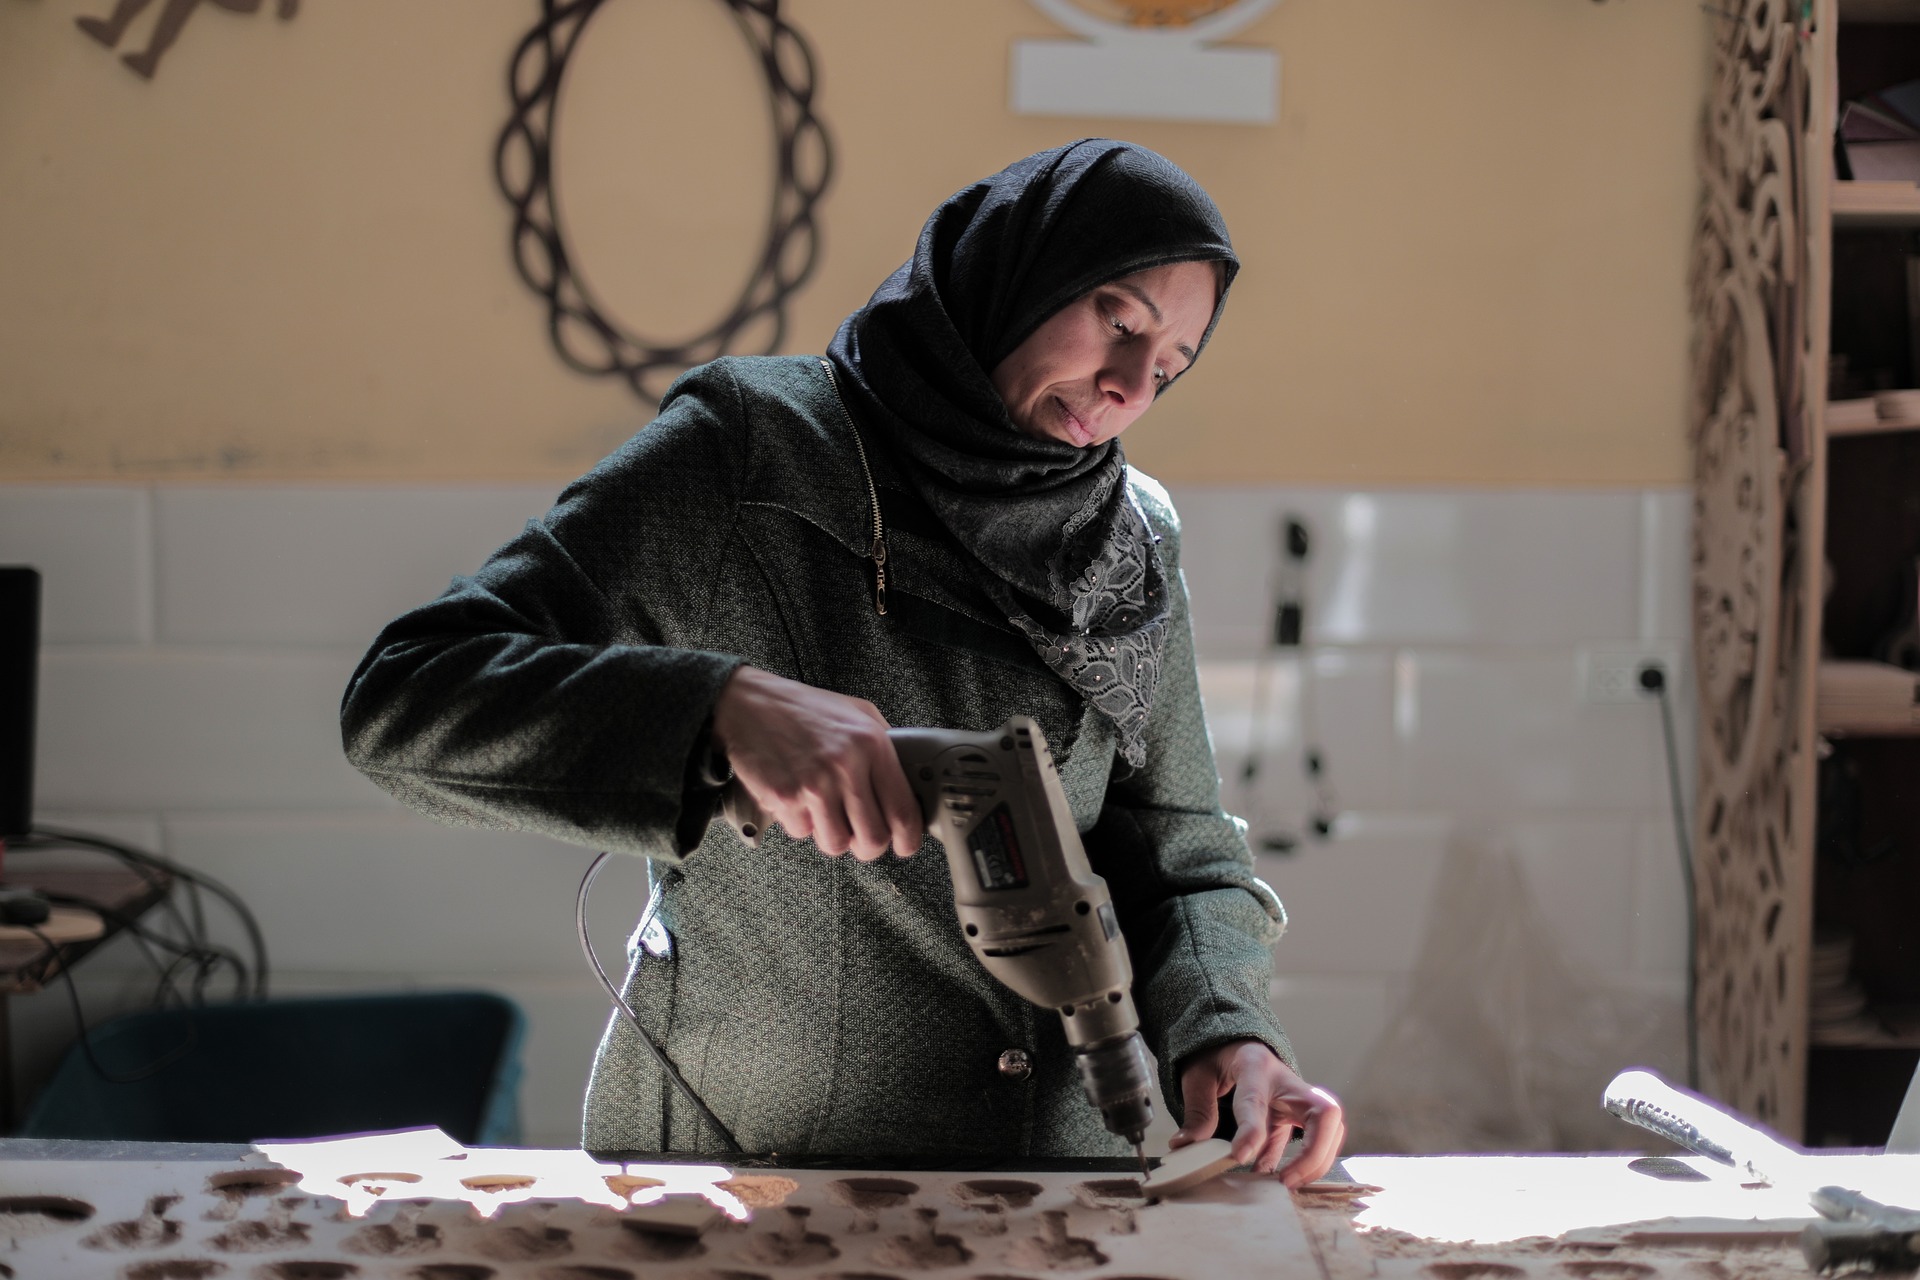 Bild zeigt Frau mit Kopftuch, die in einer Werkstatt mit einem Bohrer arbeitet